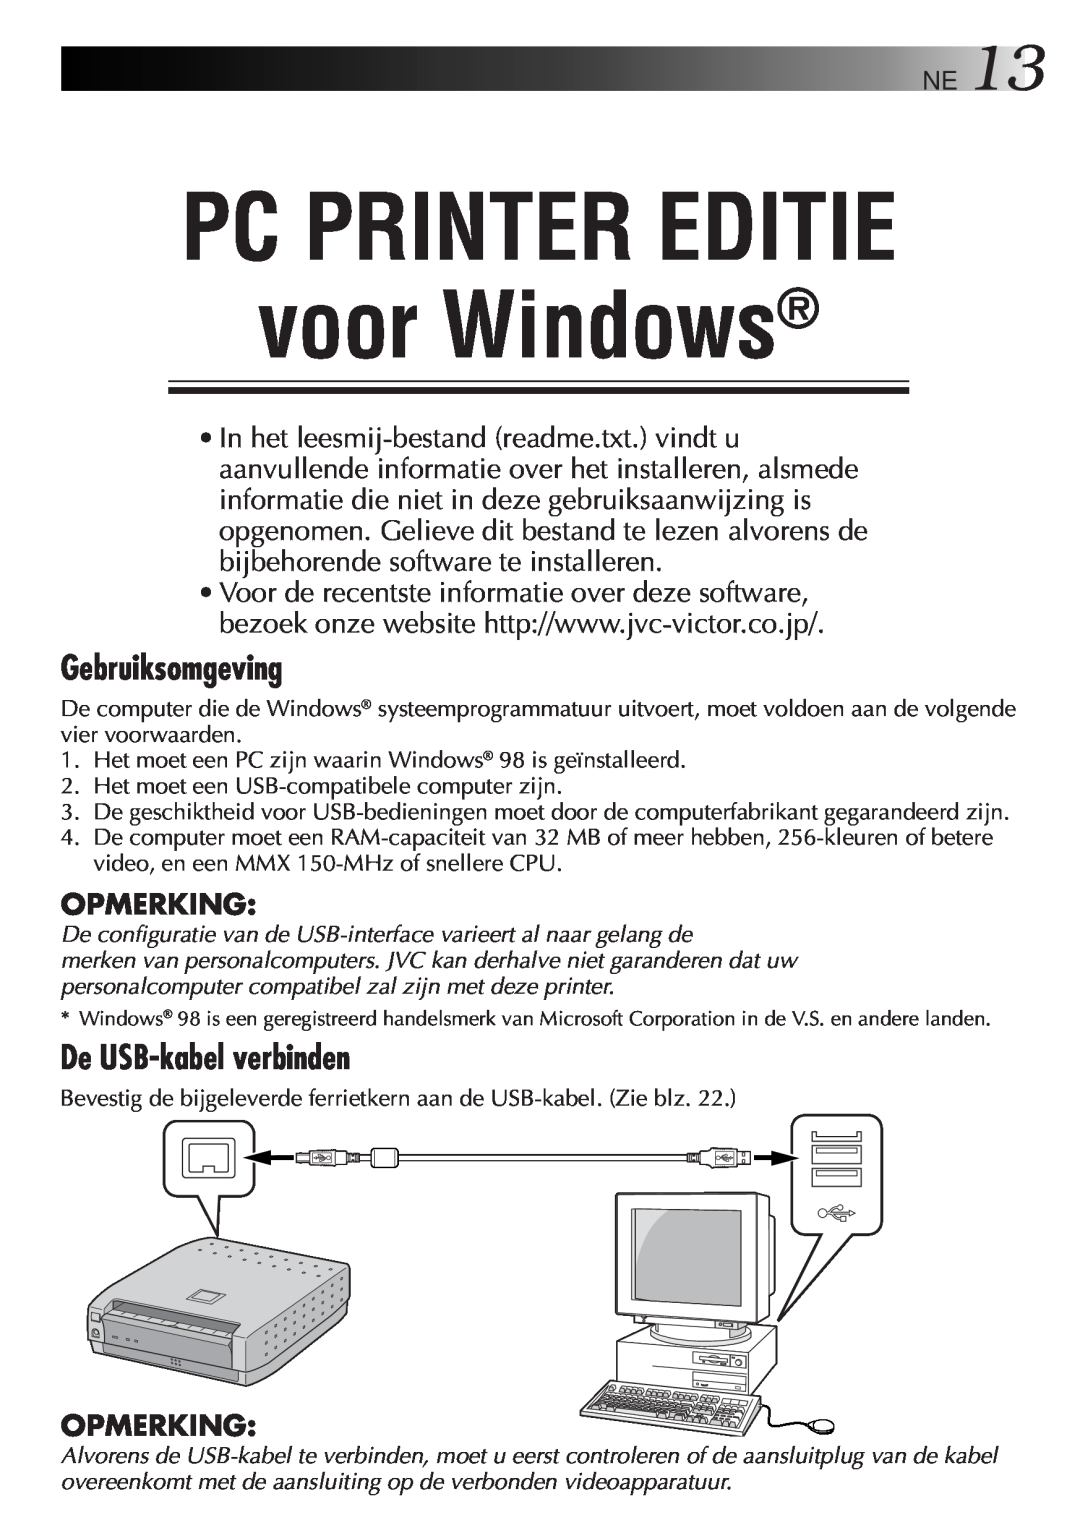 JVC GV-SP2 manual PC PRINTER EDITIE voor Windows, Gebruiksomgeving, De USB-kabelverbinden, Opmerking 